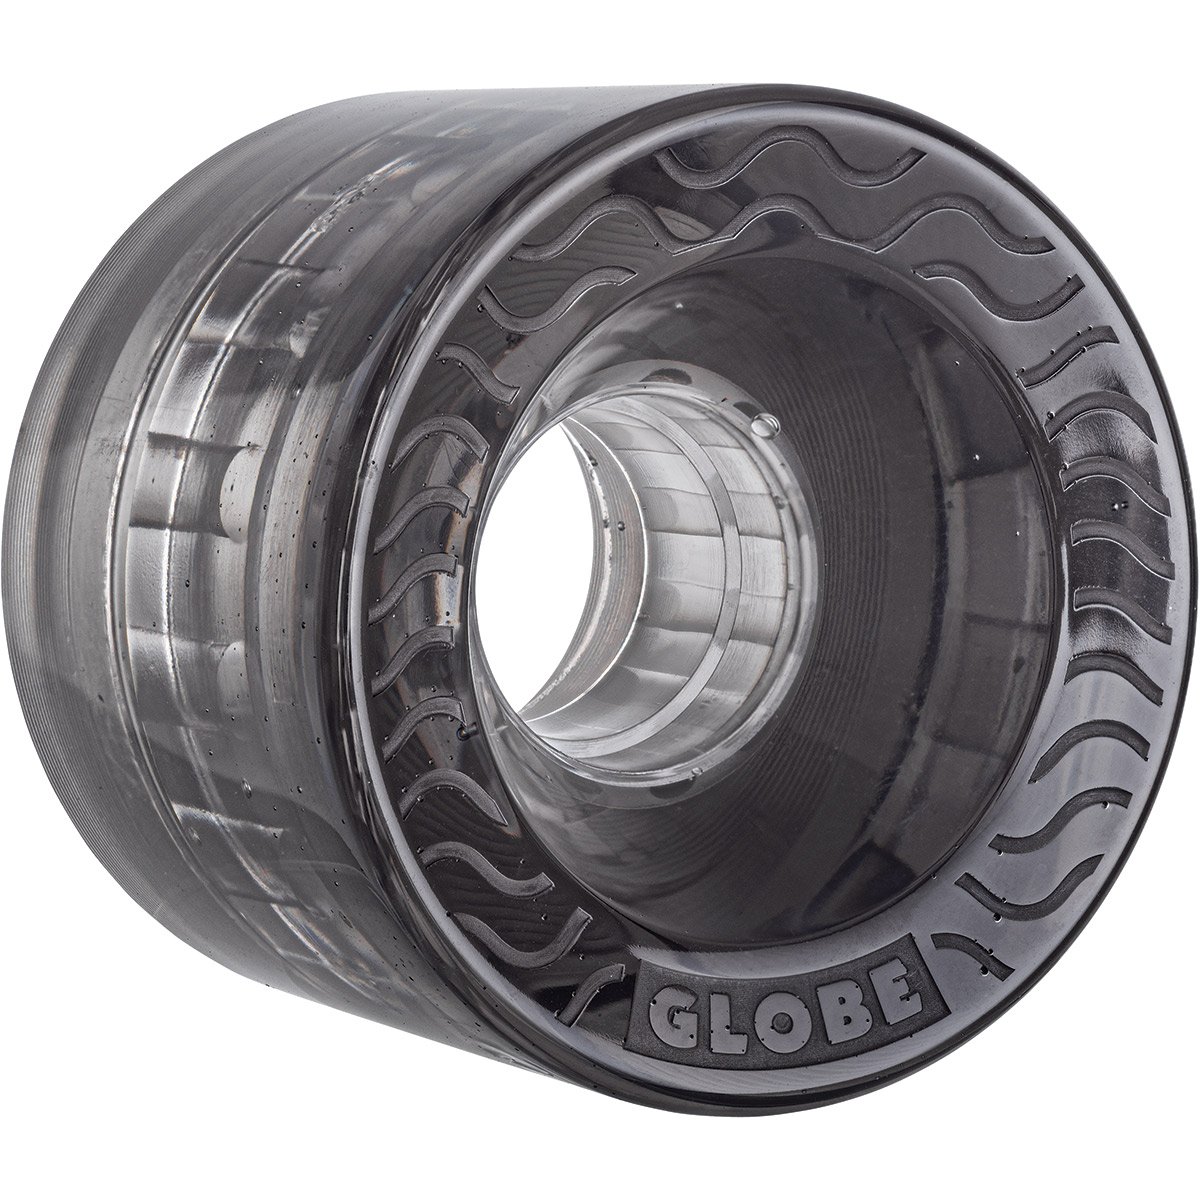 Globe Retro Flex 83A wheels 58 mm clear black